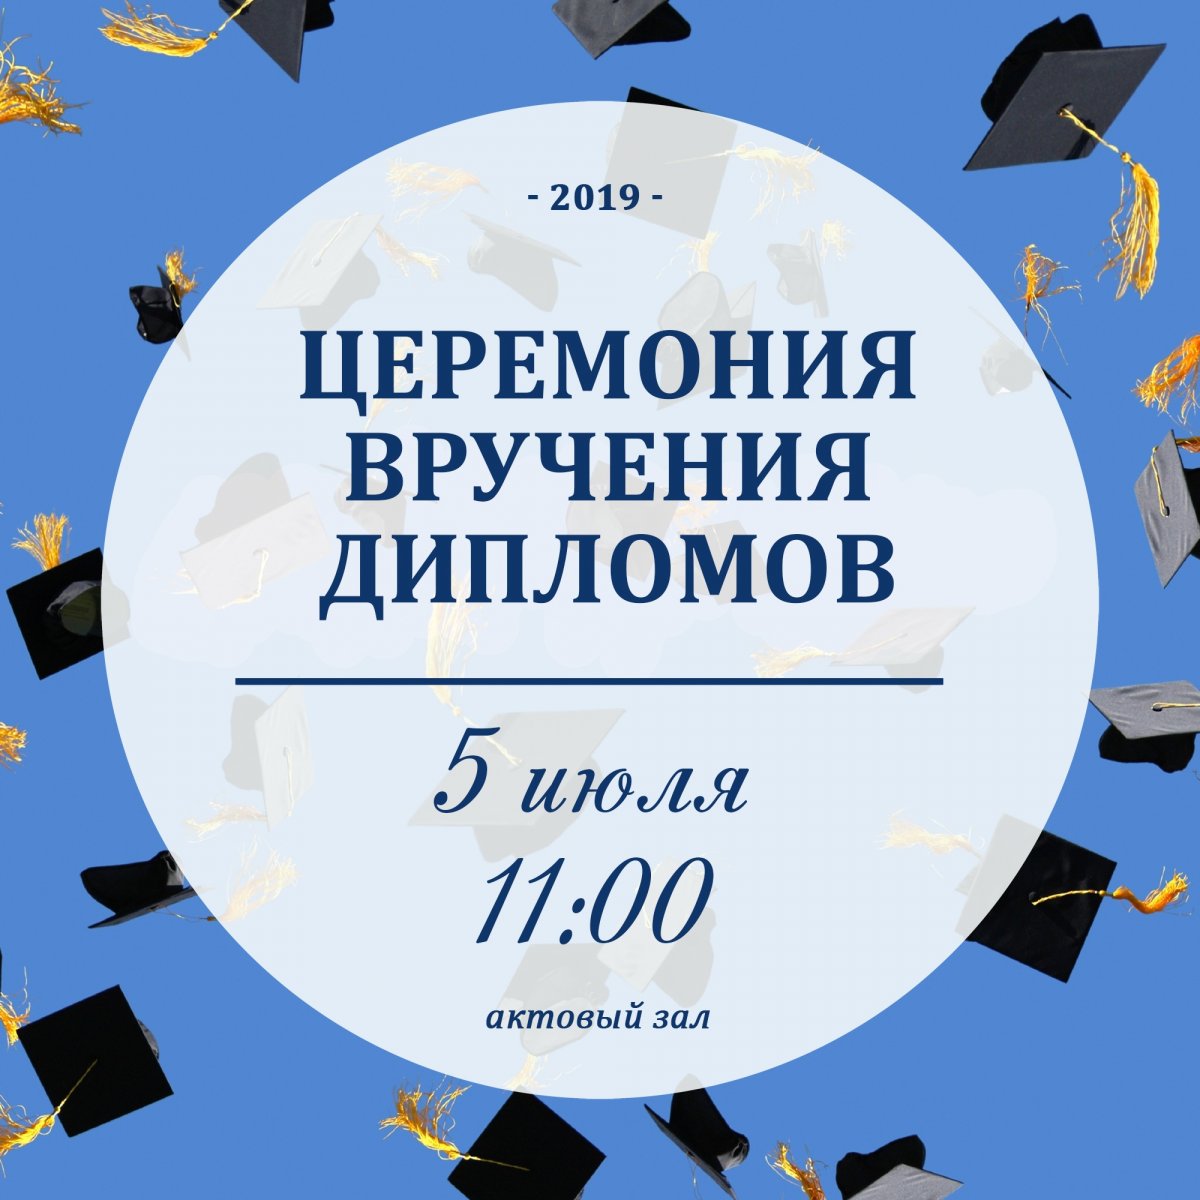 Уважаемые студенты! Церемония вручения дипломов состоится 5 июля в 11.00